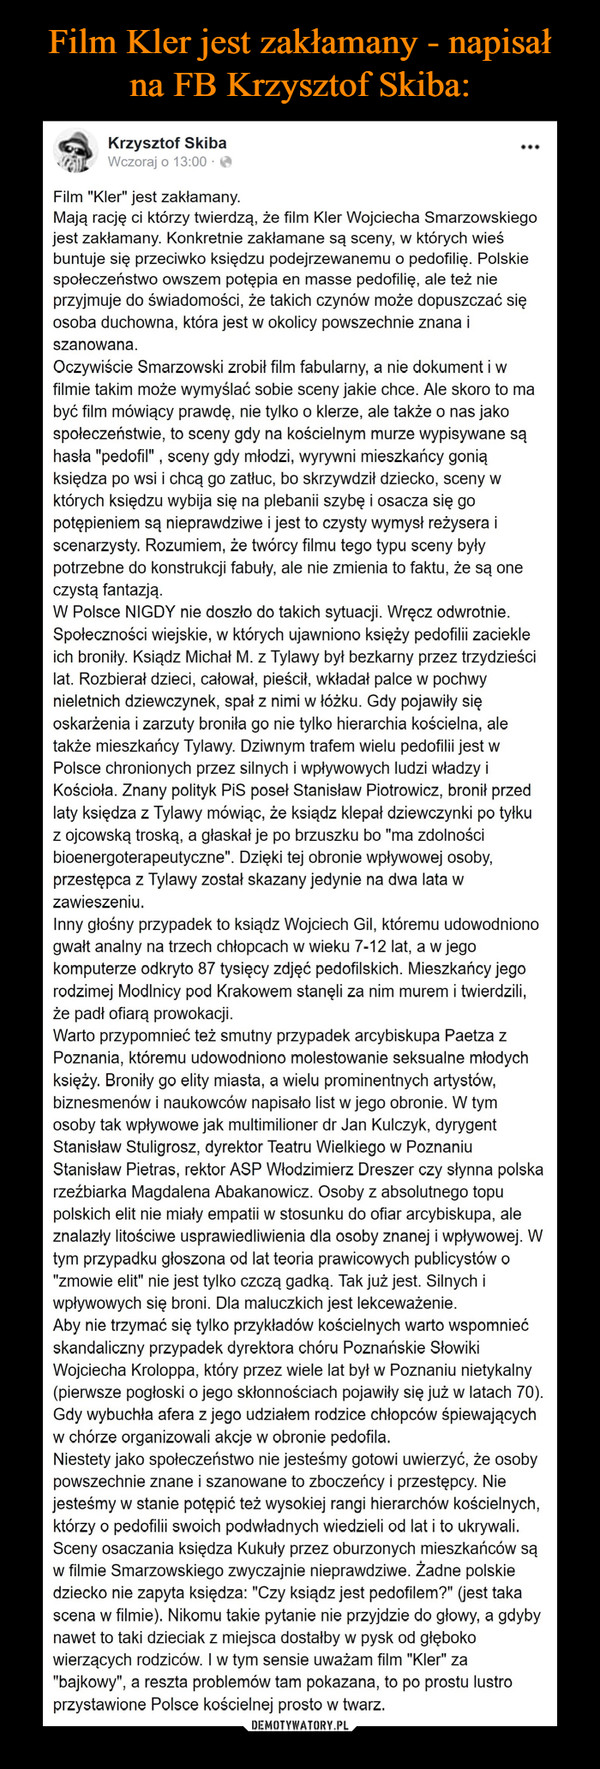 Film Kler jest zakłamany - napisał na FB Krzysztof Skiba: